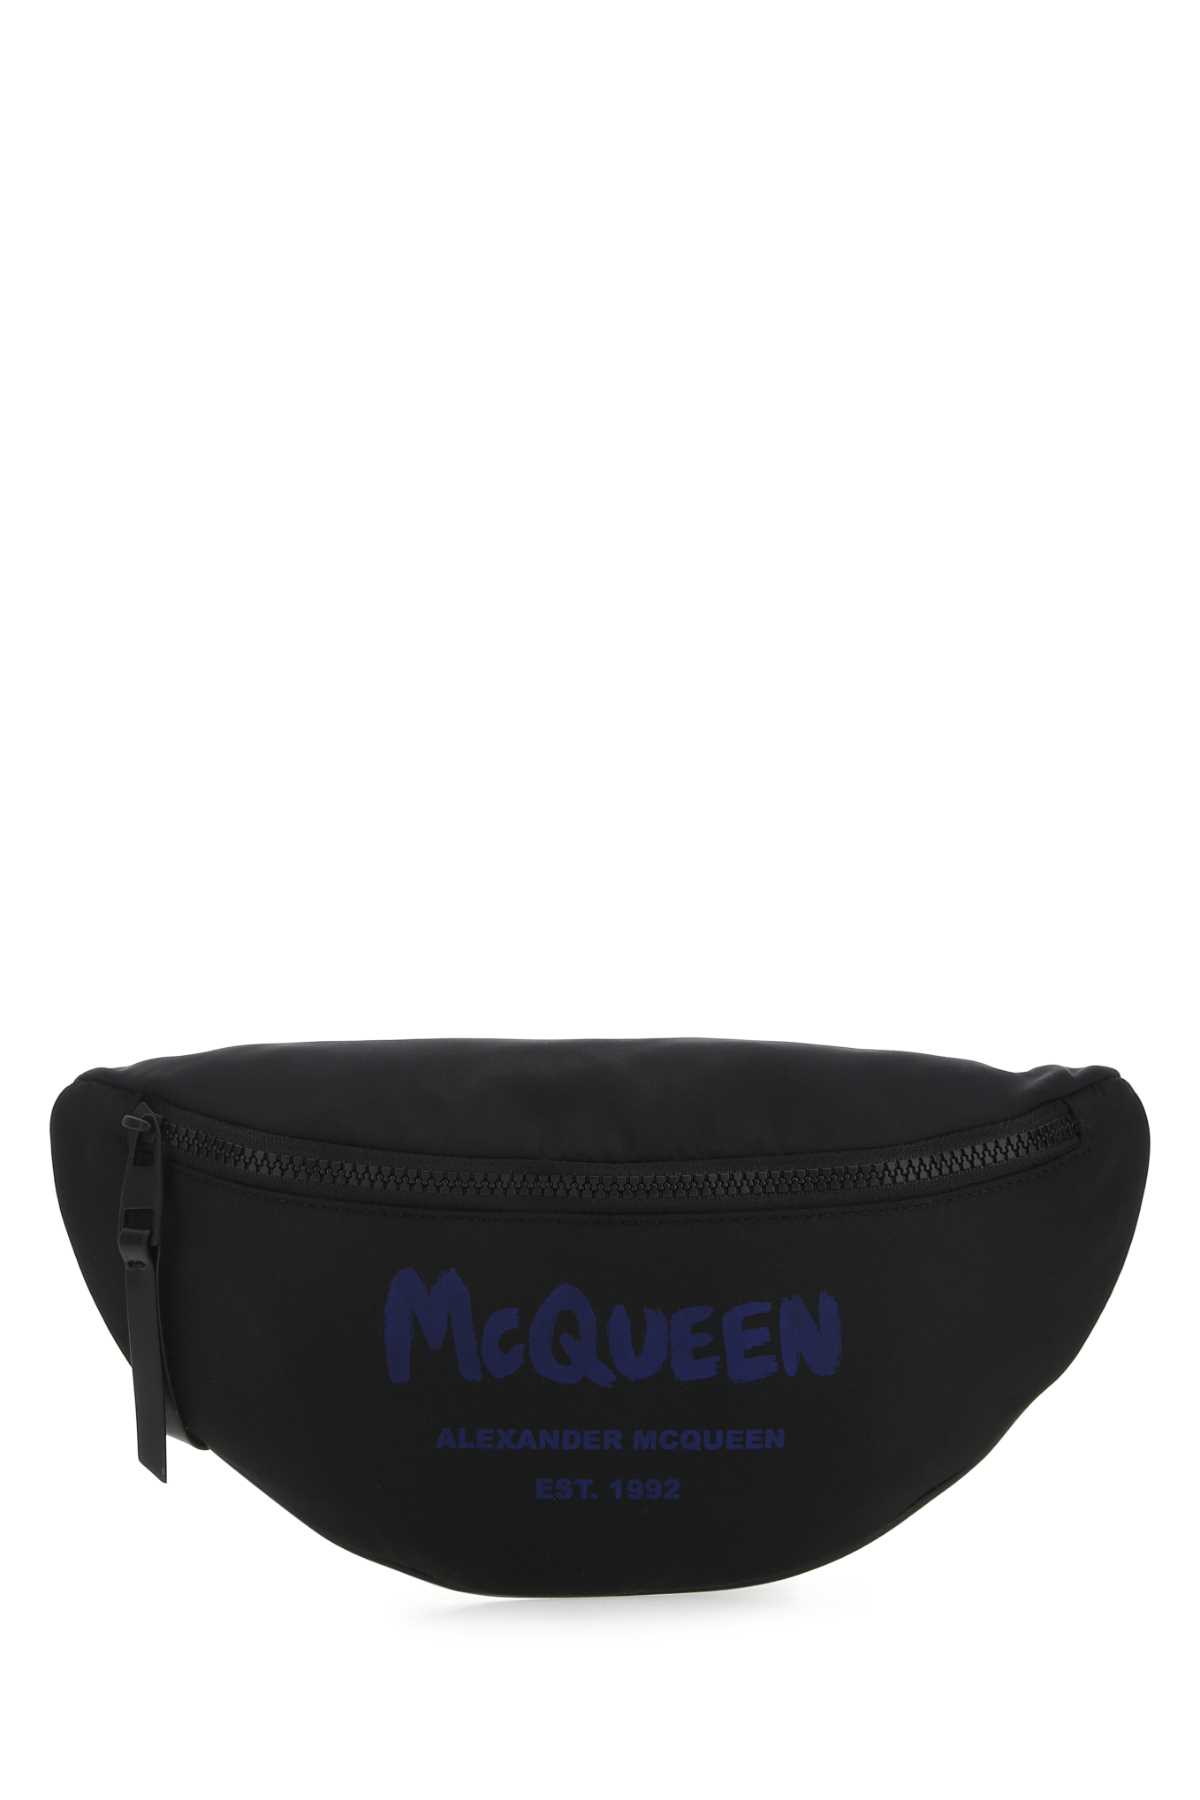 Alexander McQueen Black Polyester Mcqueen Graffiti Belt Bag